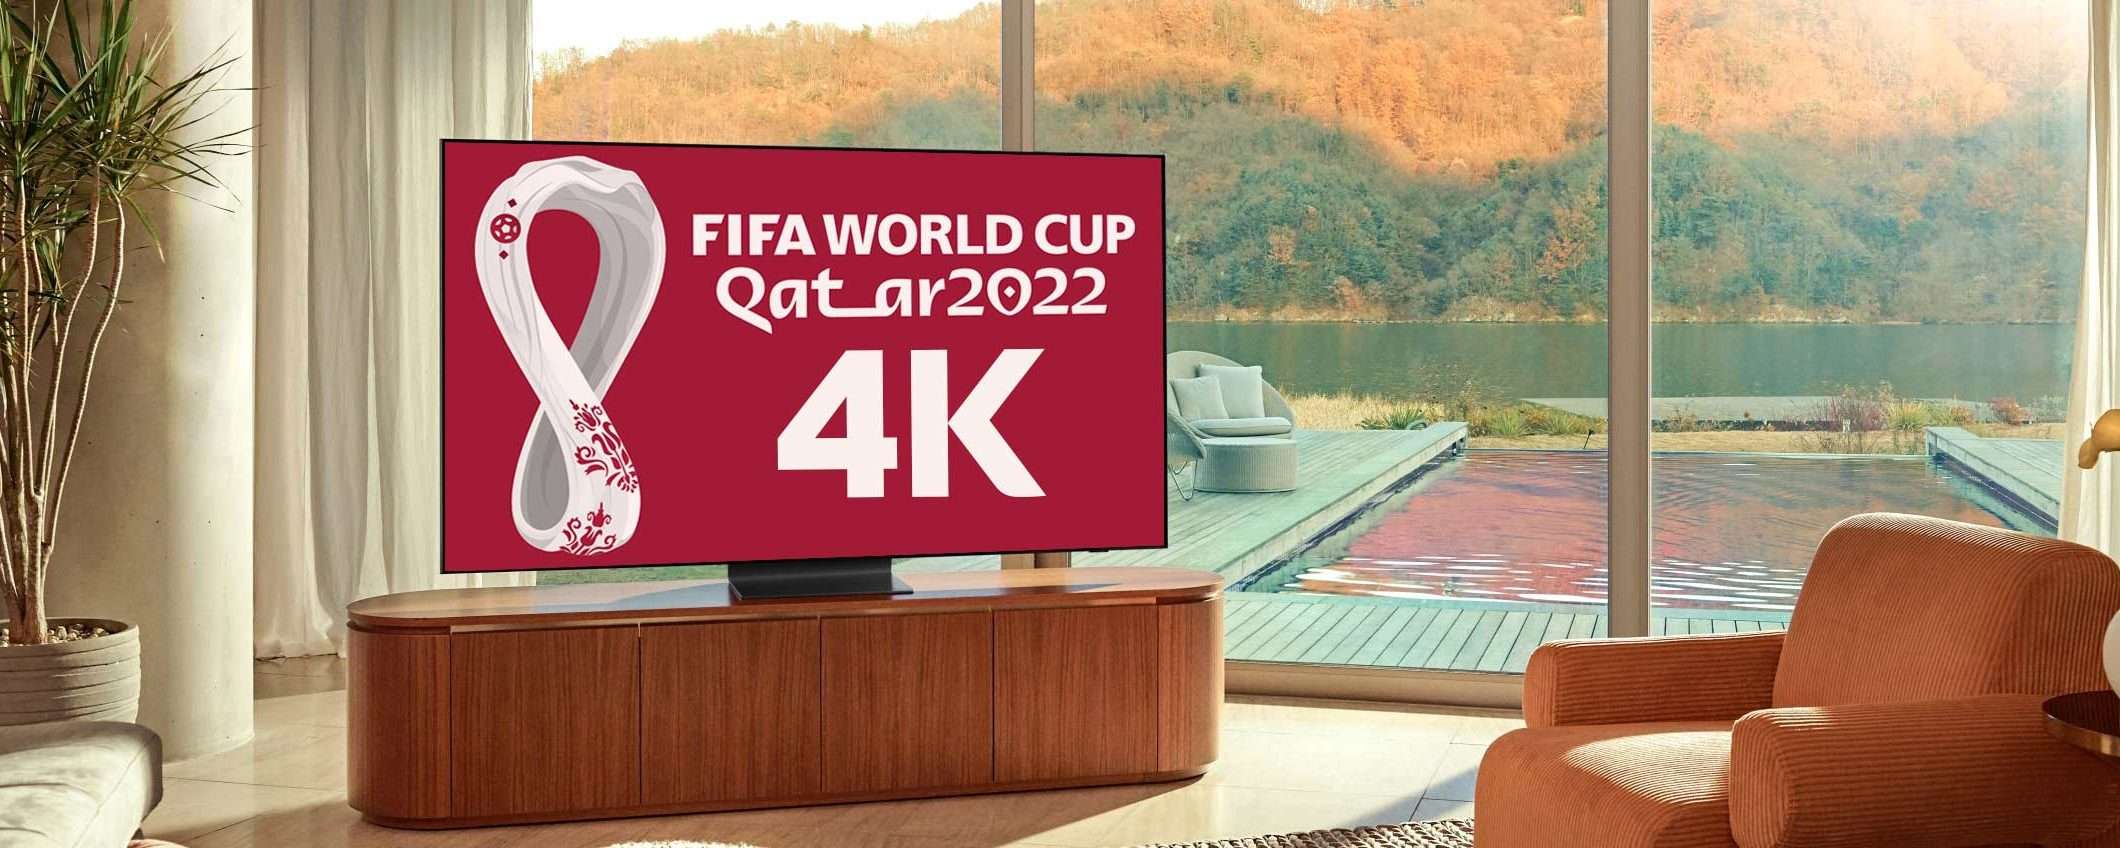 Mondiali in 4K: come vedere le partite in Ultra HD